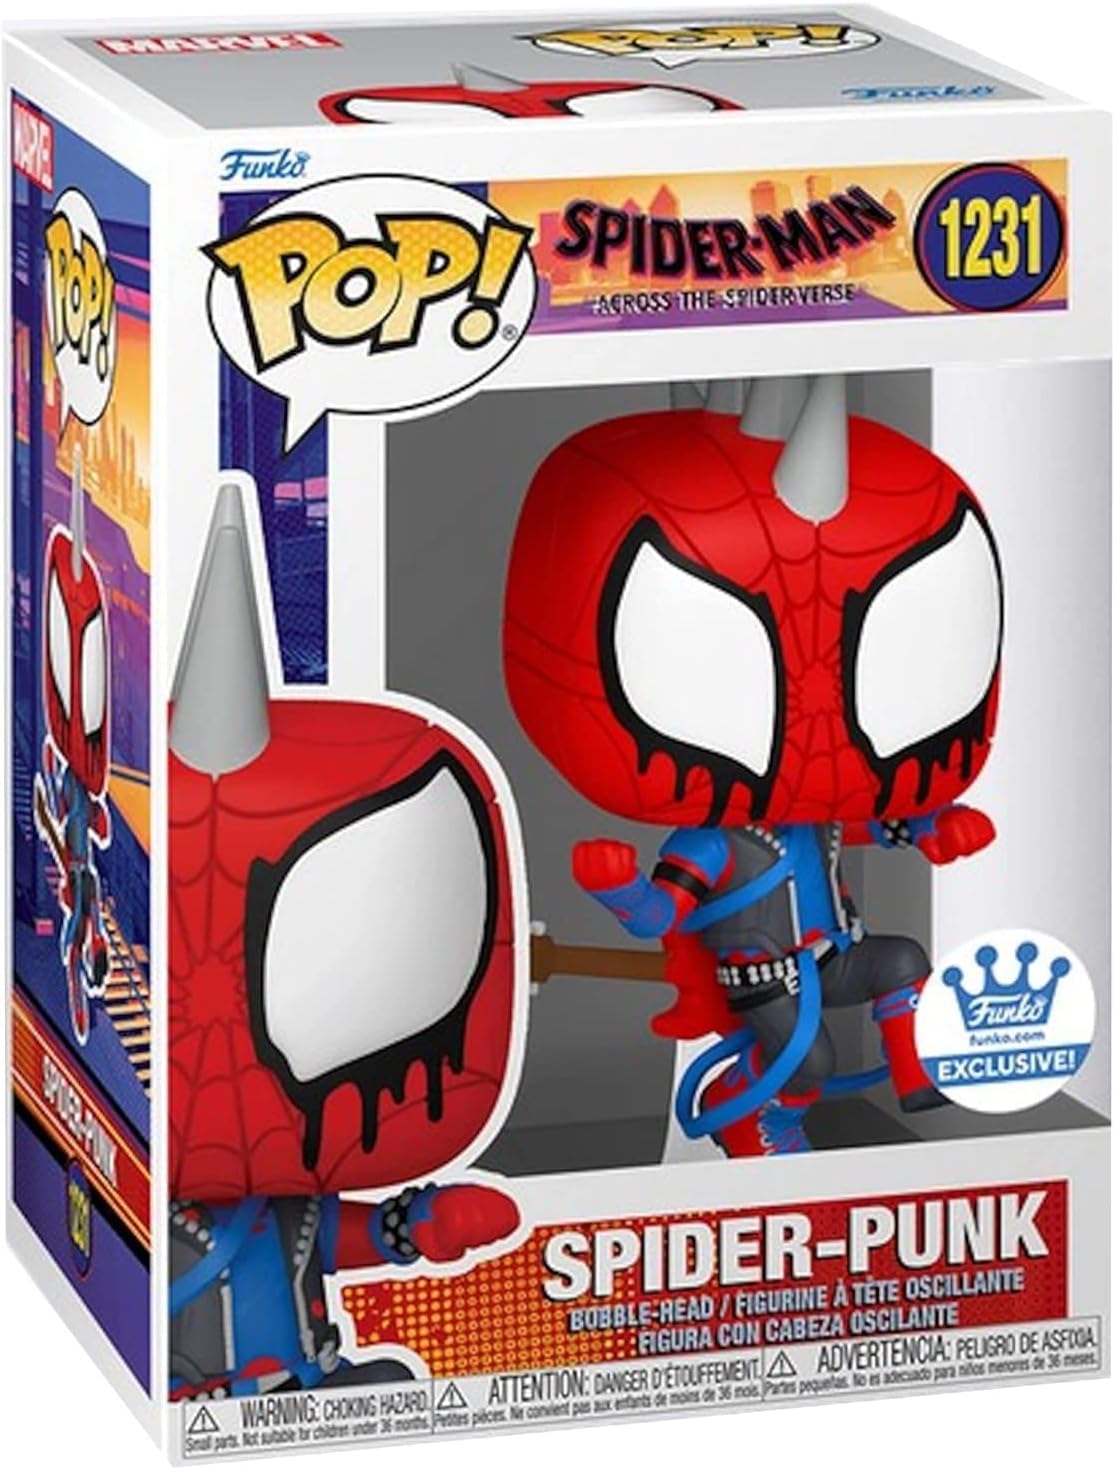 Funko Pop! Spider-man Across the Spider-Verse Spider-Spunk Vinyl Figure 1231